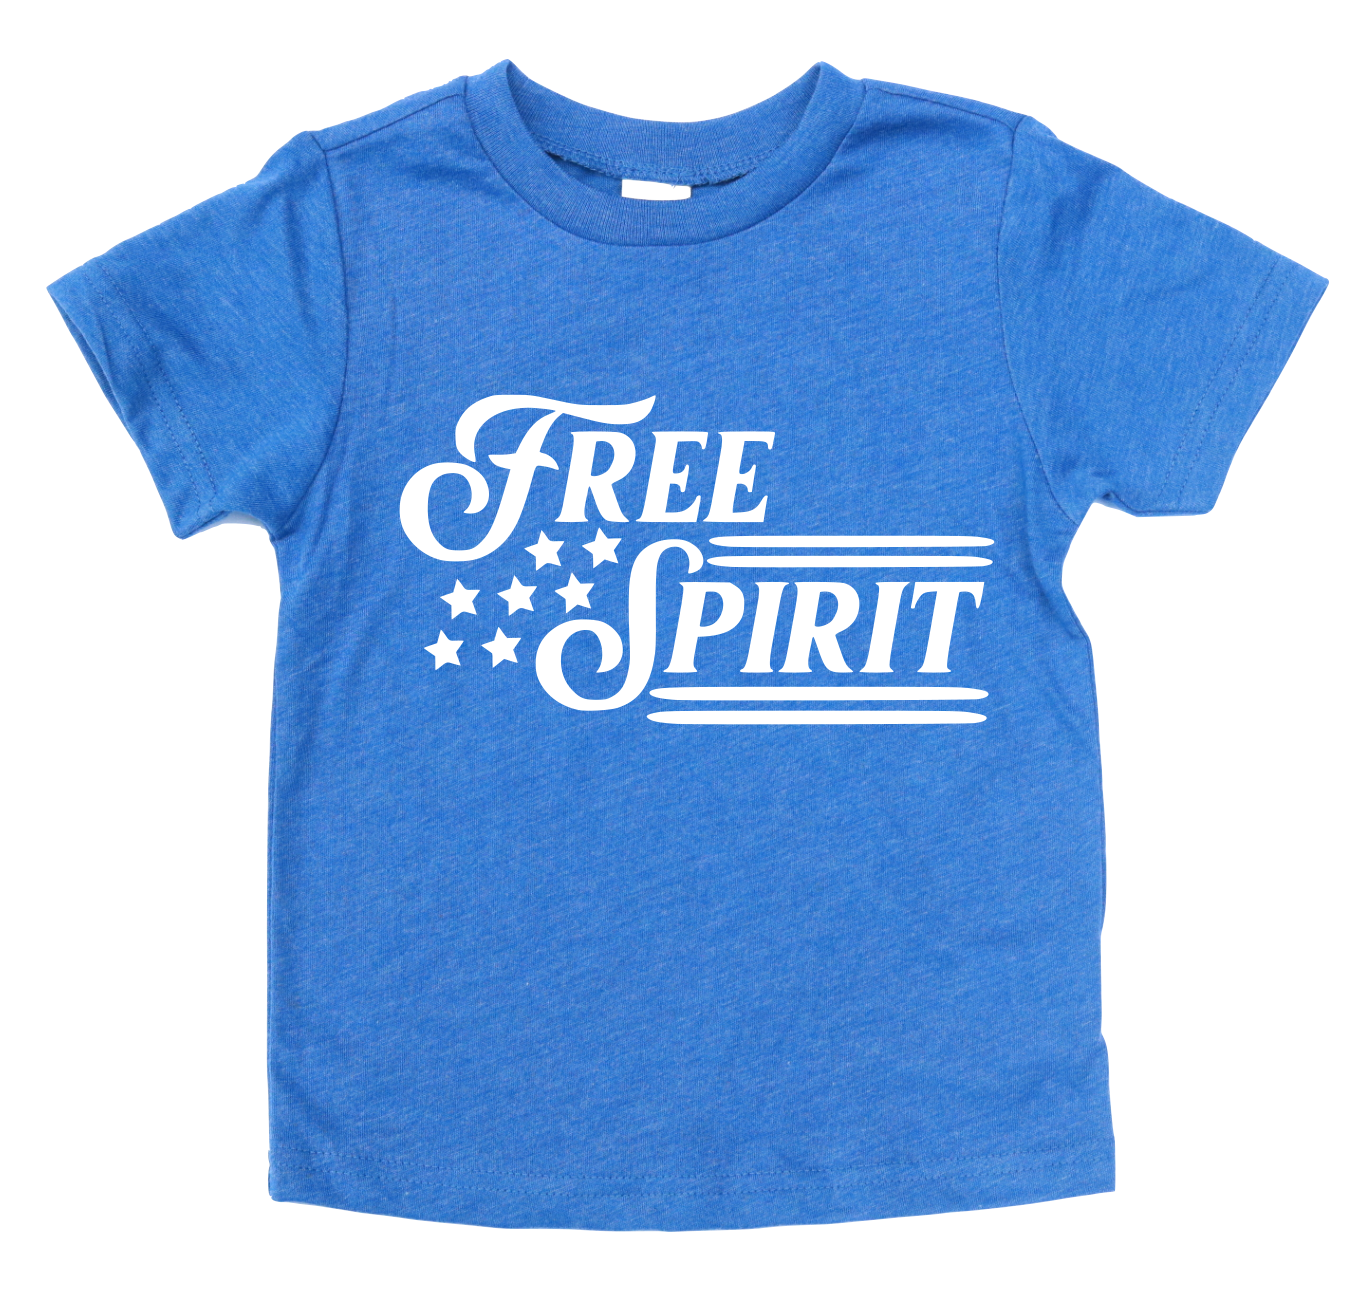 FREE SPIRIT KIDS SHIRT